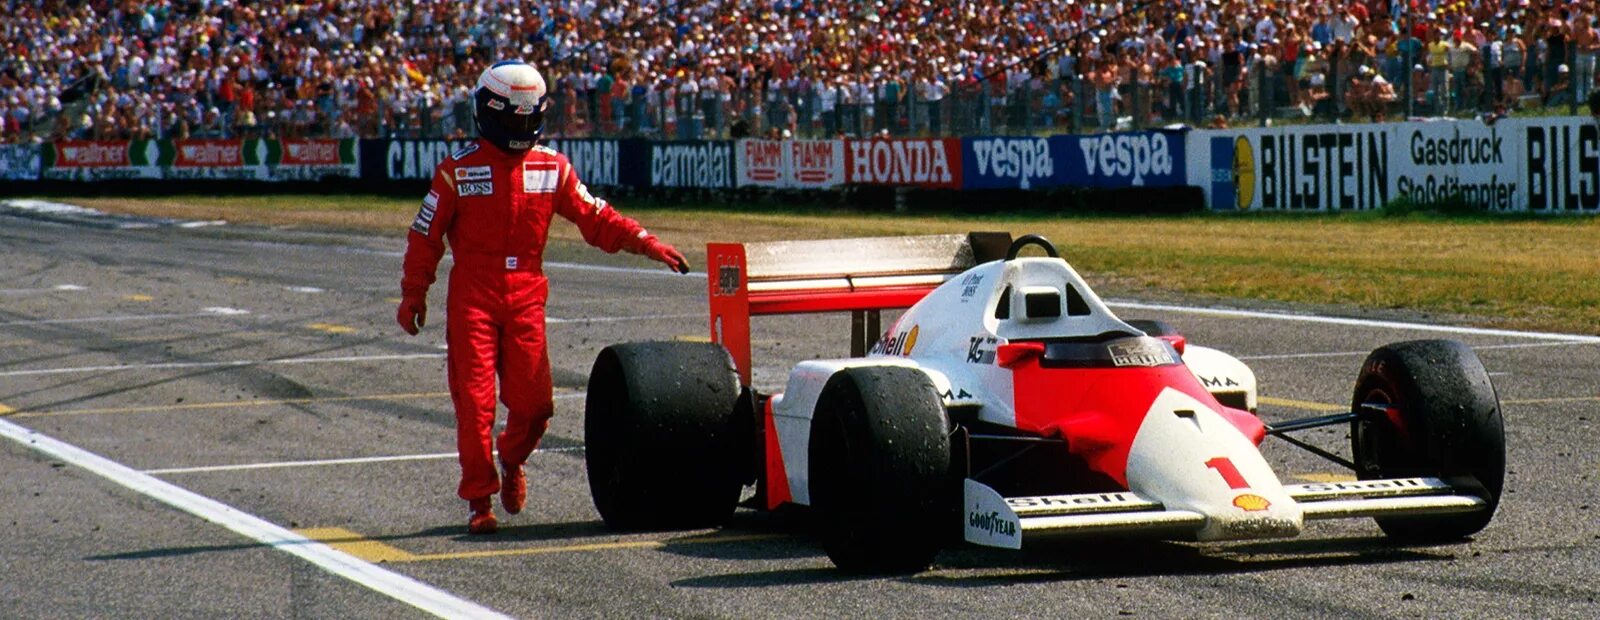 Прост формула 1. Prost f1 1996. Автогонщик профессия. Водитель болида.